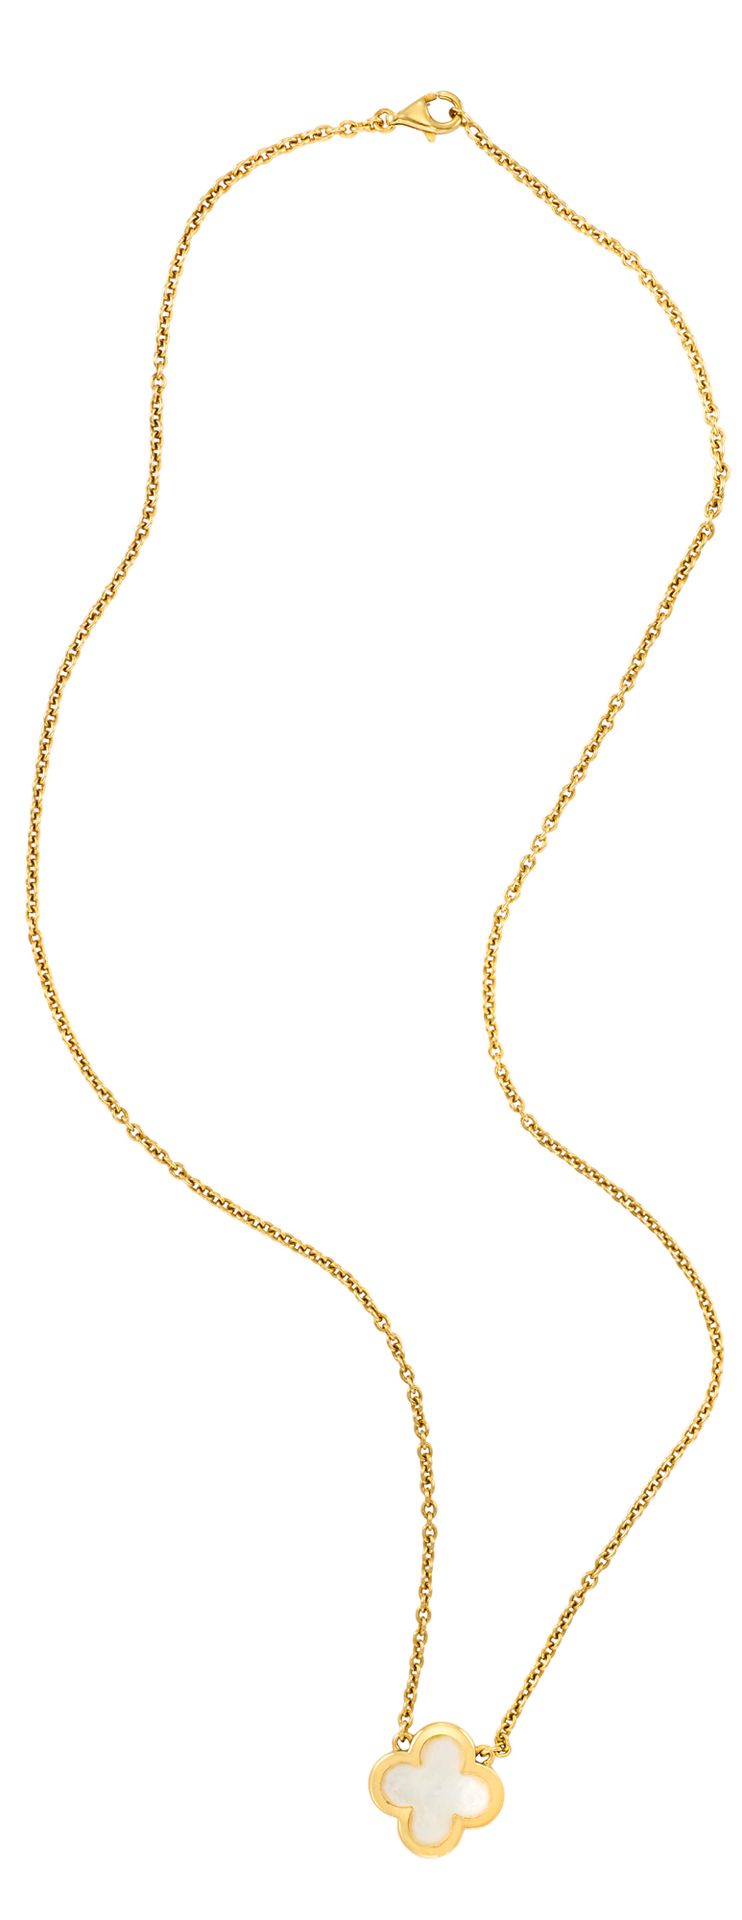 VAN CLEEF & ARPELS 阿尔罕布拉 "系列 
双面镶嵌珍珠母贝的黄金四叶草项链
刻有字母和编号
直径：1.6 厘米 - 长度：47.5 厘米
重量&hellip;